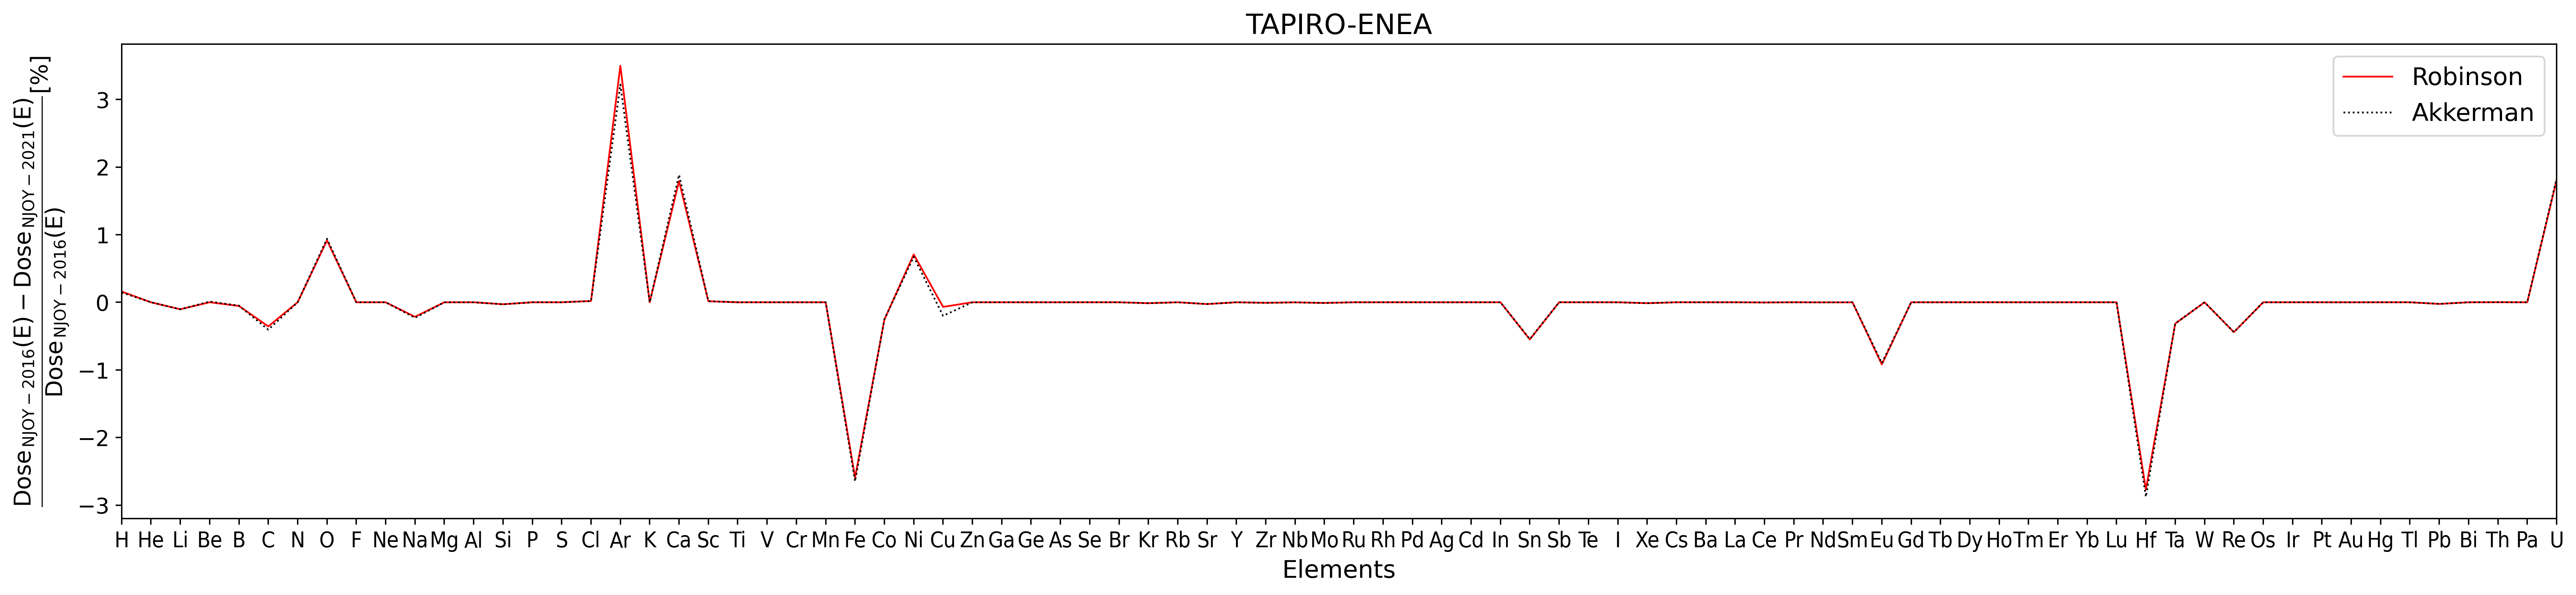 TAPIRO1